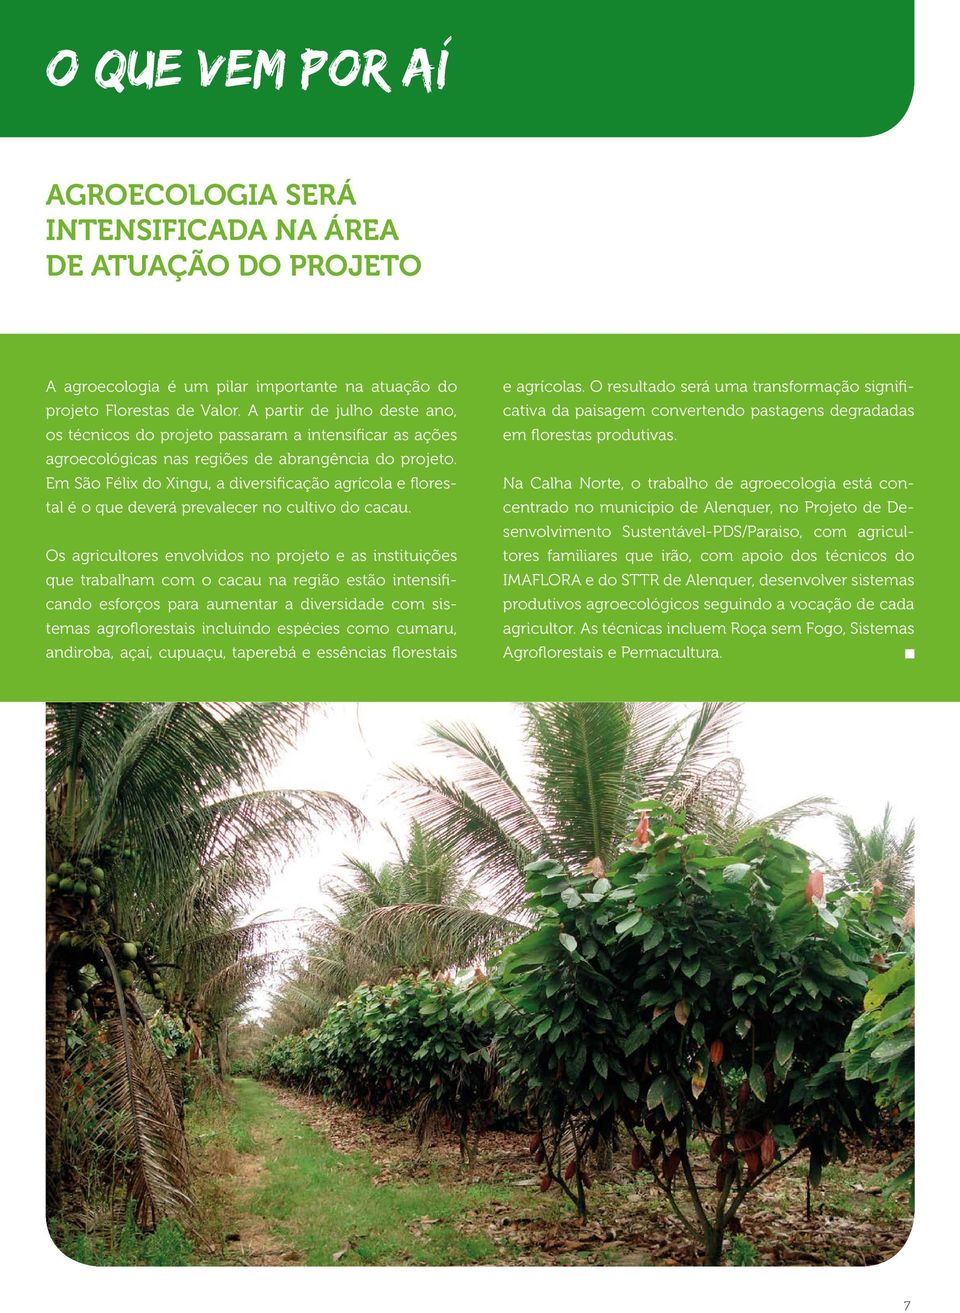 Em São Félix do Xingu, a diversificação agrícola e florestal é o que deverá prevalecer no cultivo do cacau.